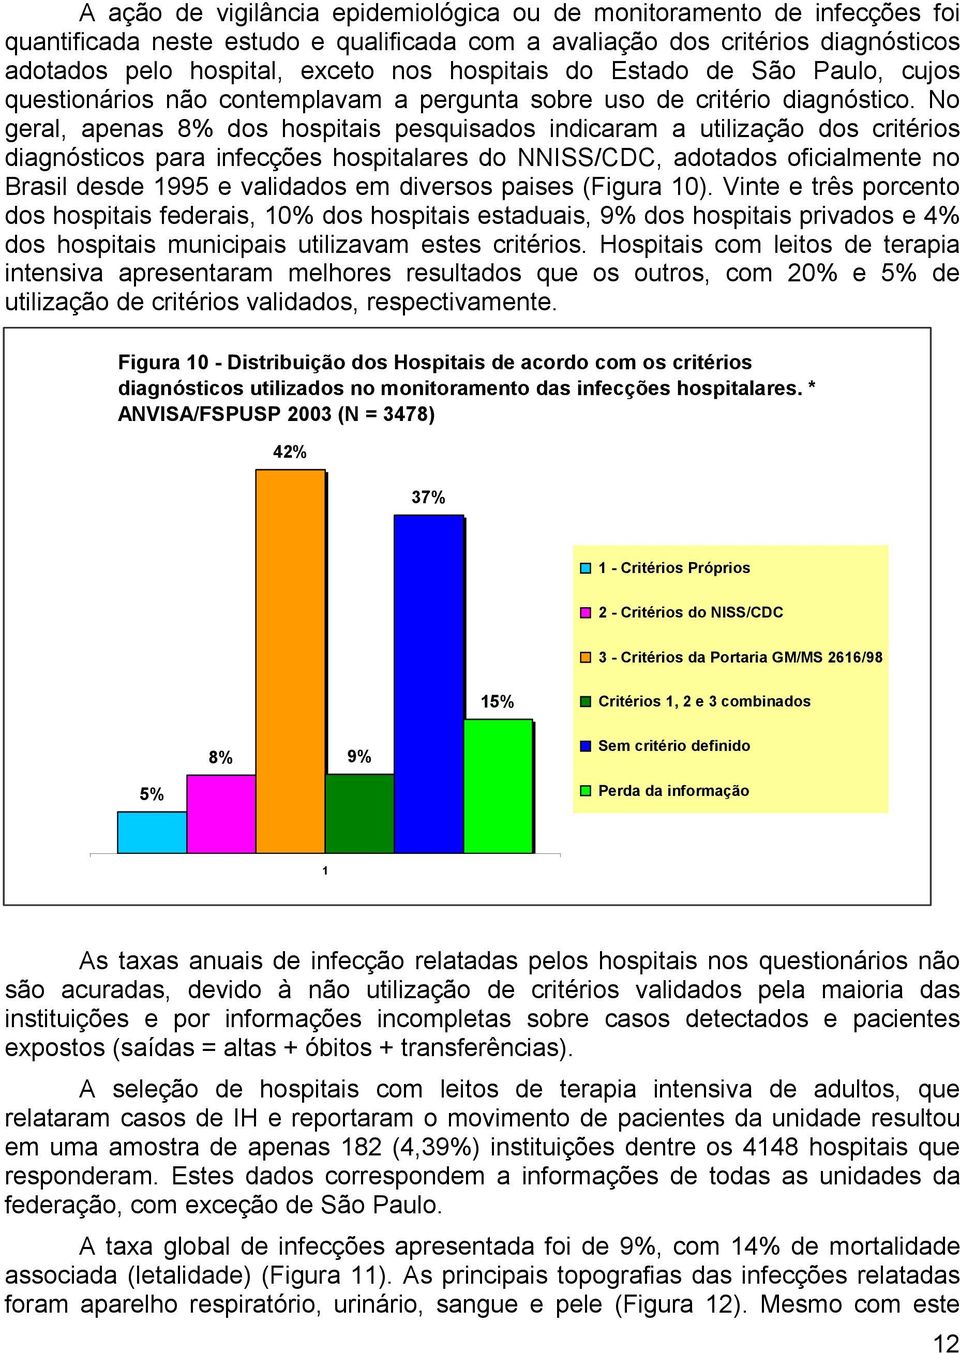 No geral, apenas 8% dos hospitais pesquisados indicaram a utilização dos critérios diagnósticos para infecções hospitalares do NNISS/CDC, adotados oficialmente no Brasil desde 1995 e validados em